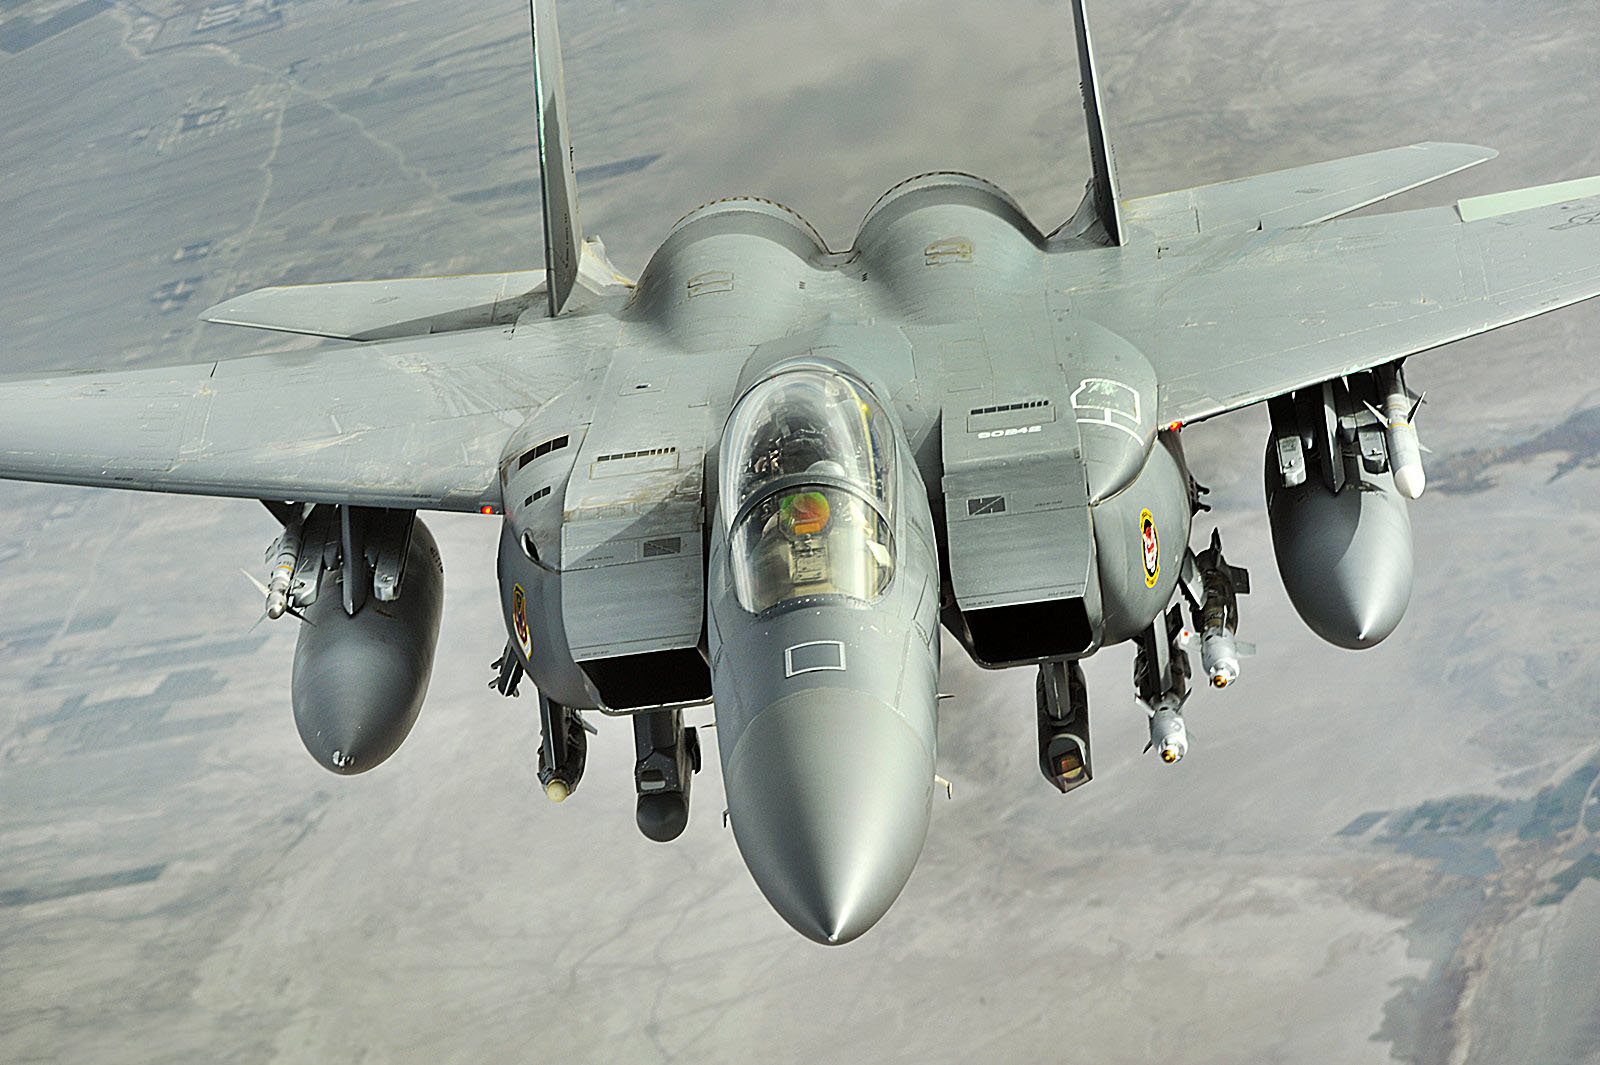 السعودية تتعاون مع شركة كورية لتطوير طائراتها المقاتلة